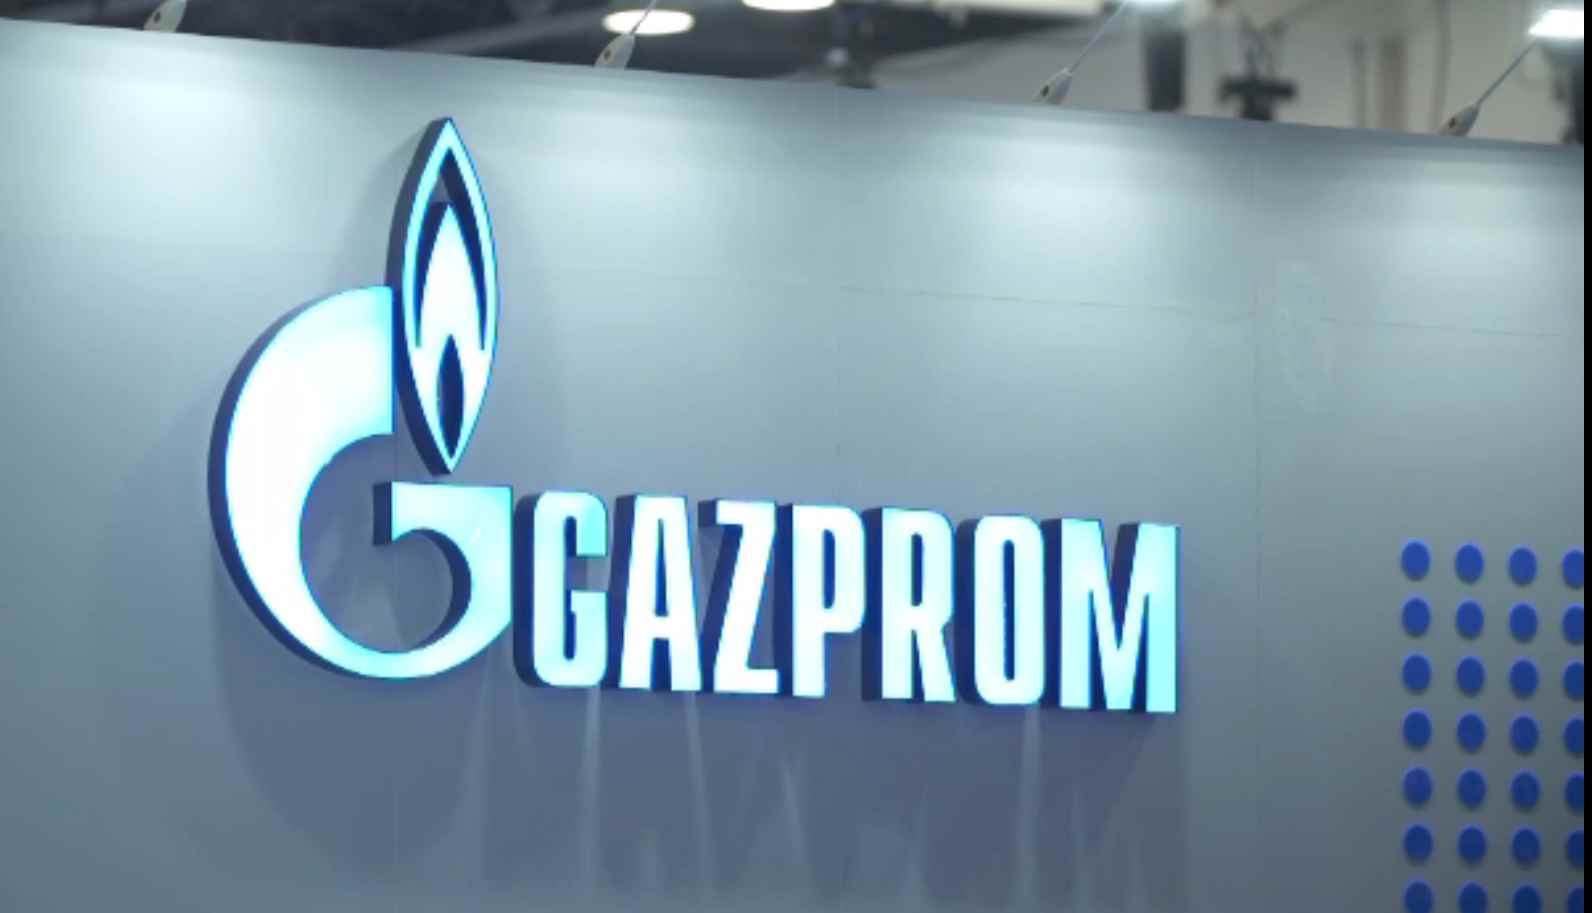 Gazprom a redus livrările către Germania, Italia și Austria. Prețurile la gaz au crescut cu 30%